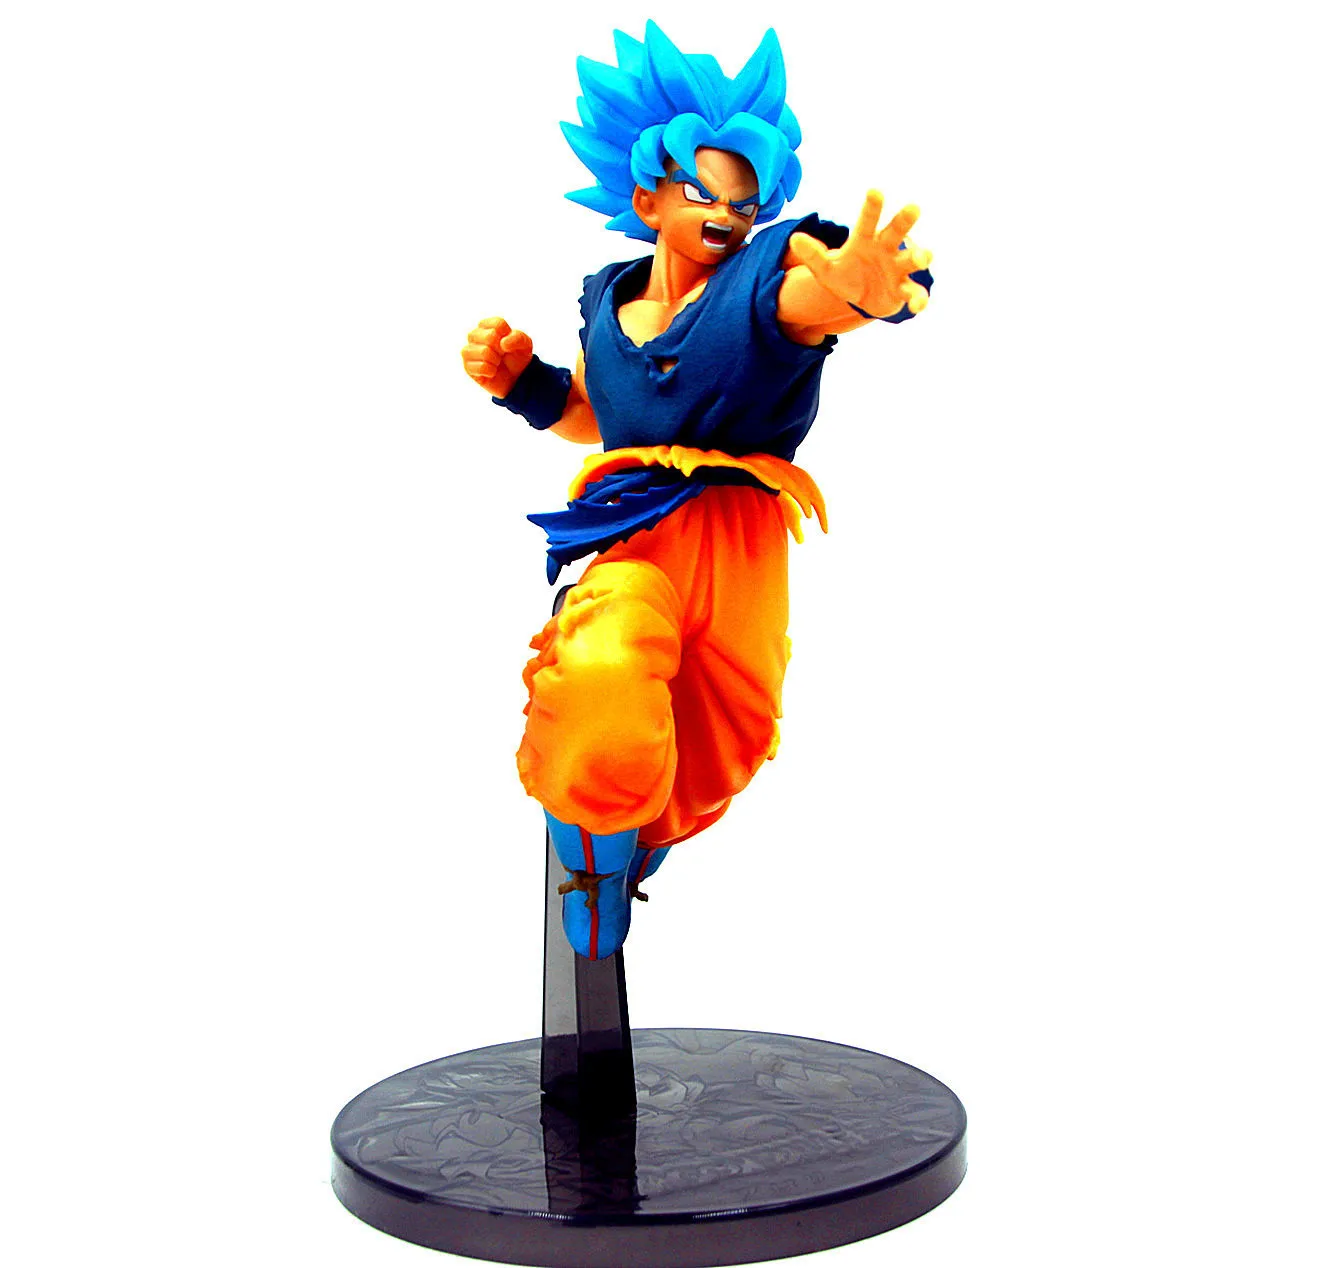 21 см японского аниме фигурка Dragon Ball синие волосы Сон Гоку/Kakarotto/Вегета фигурку Коллекционная модель игрушки для мальчиков